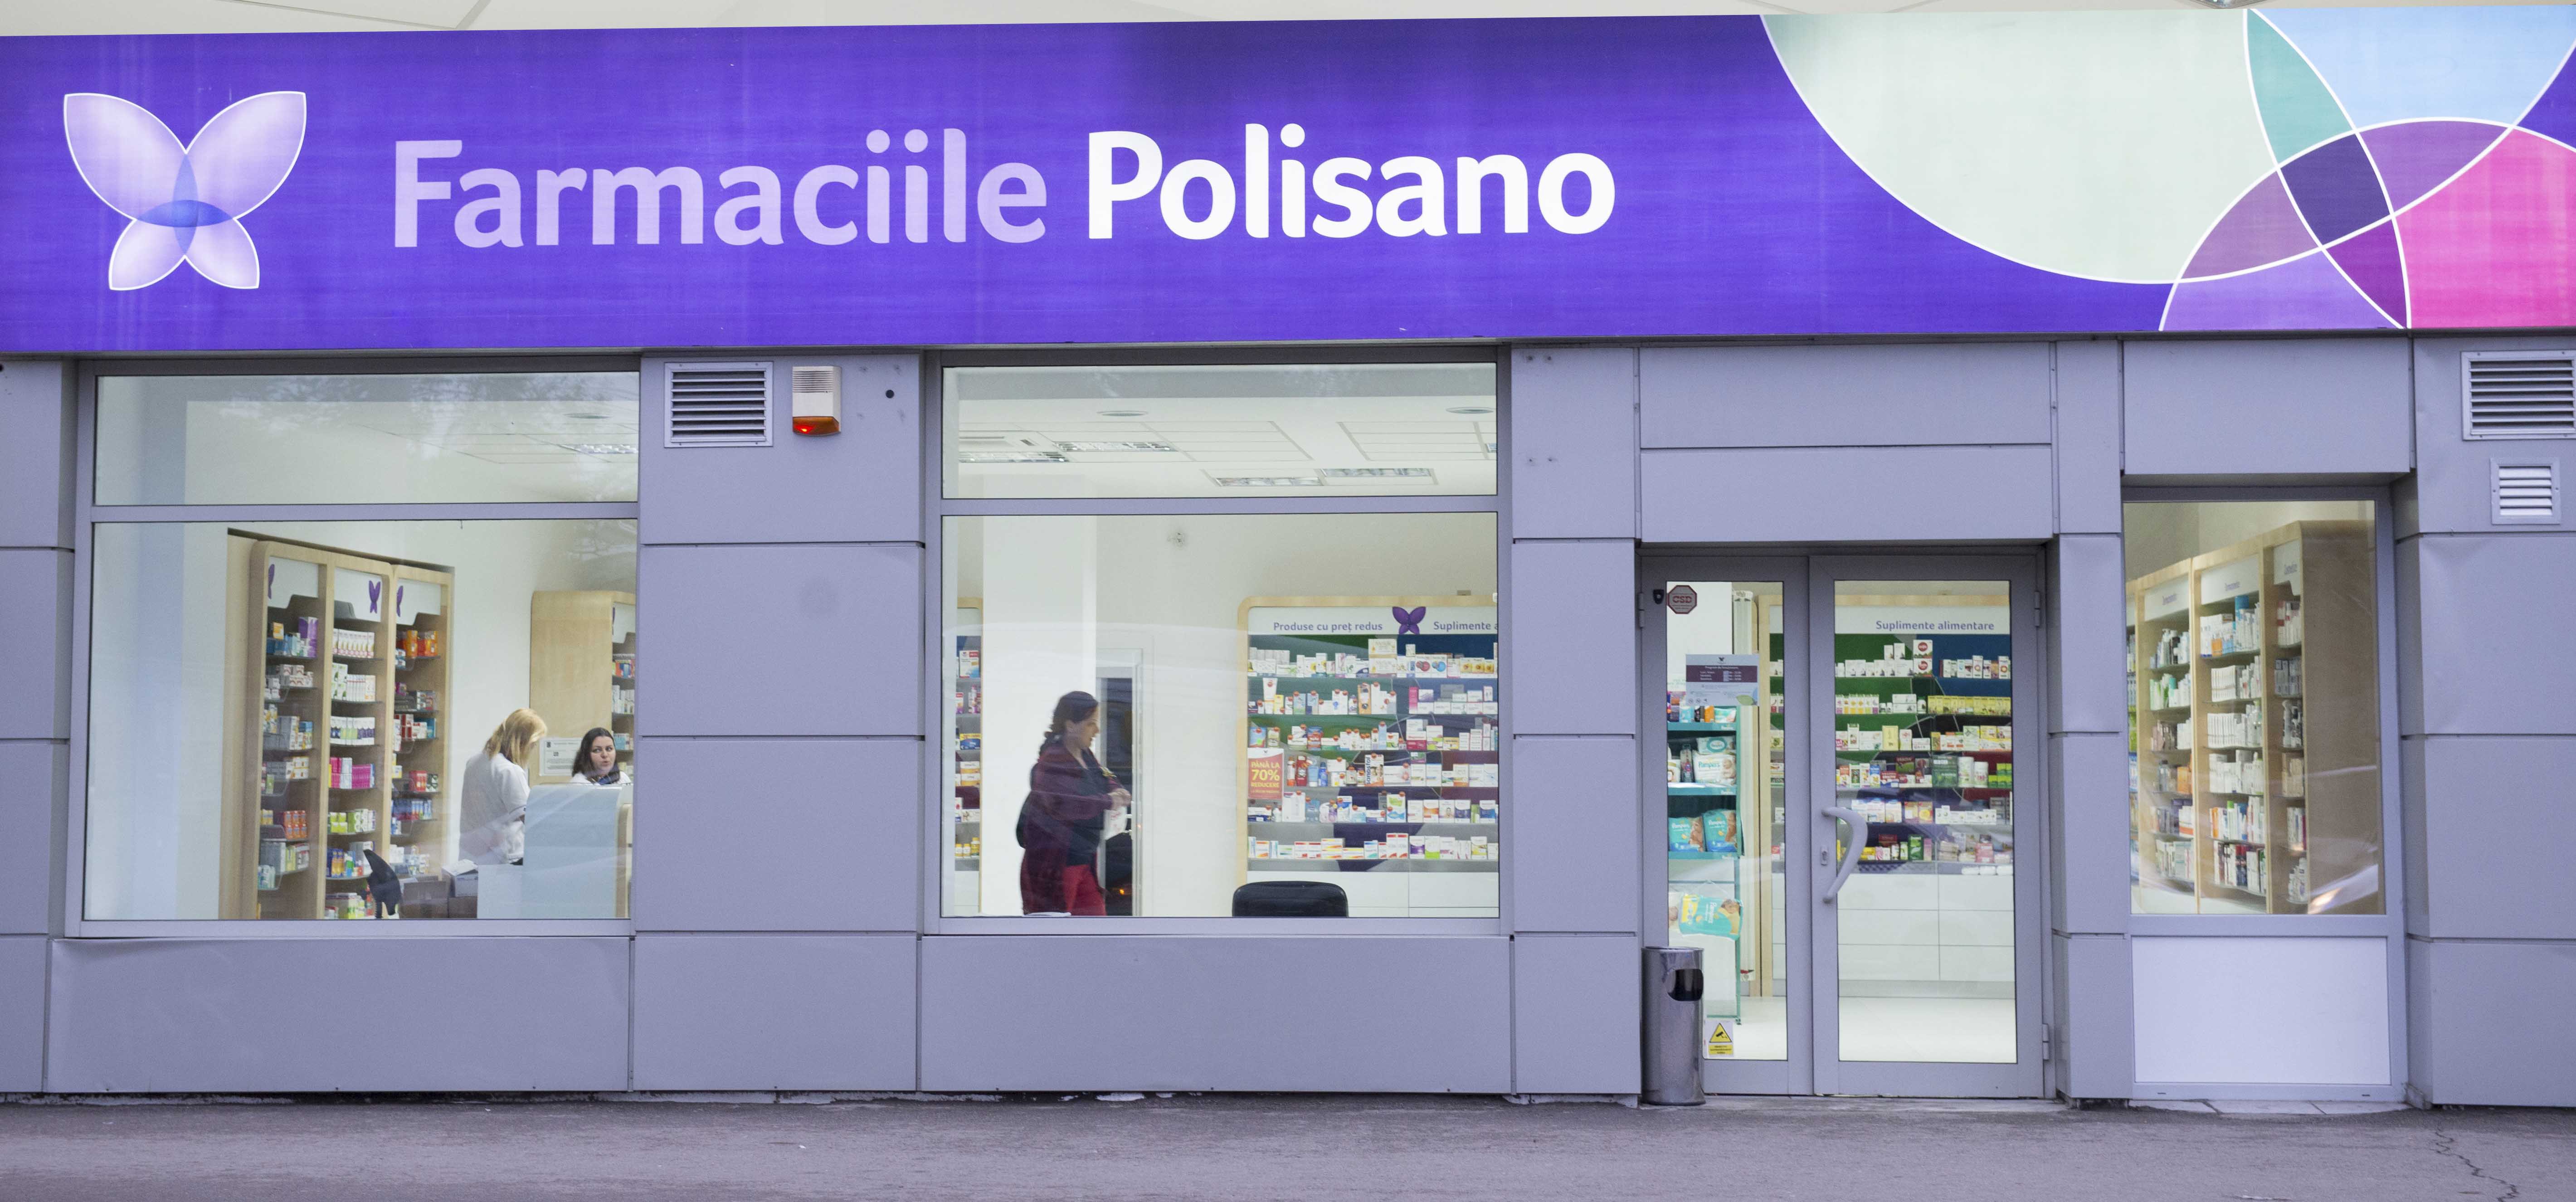 Polisano vrea să-şi dubleze anul viitor reţeaua de farmacii, la 200 de unităţi